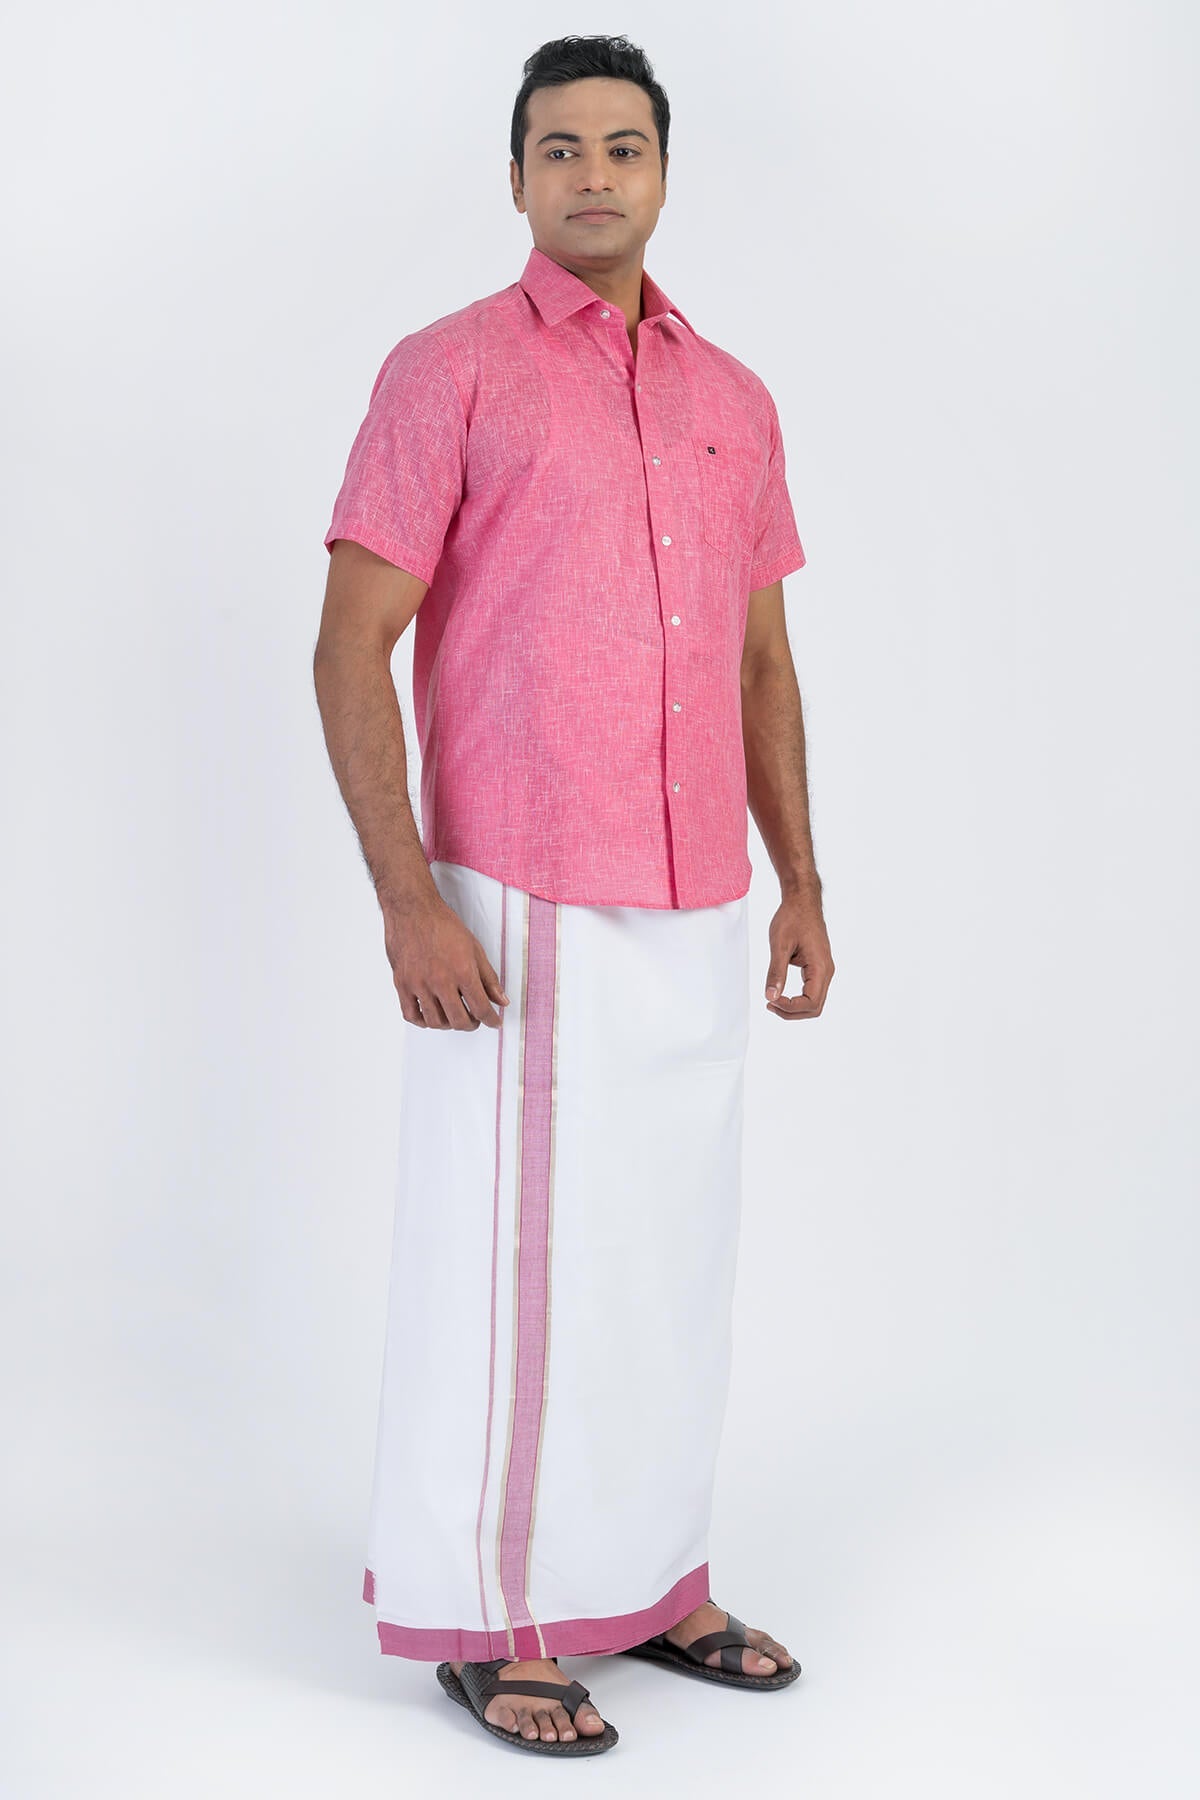 Combo Men's Premium Cotton Dhoti with Dark Pink Shirt